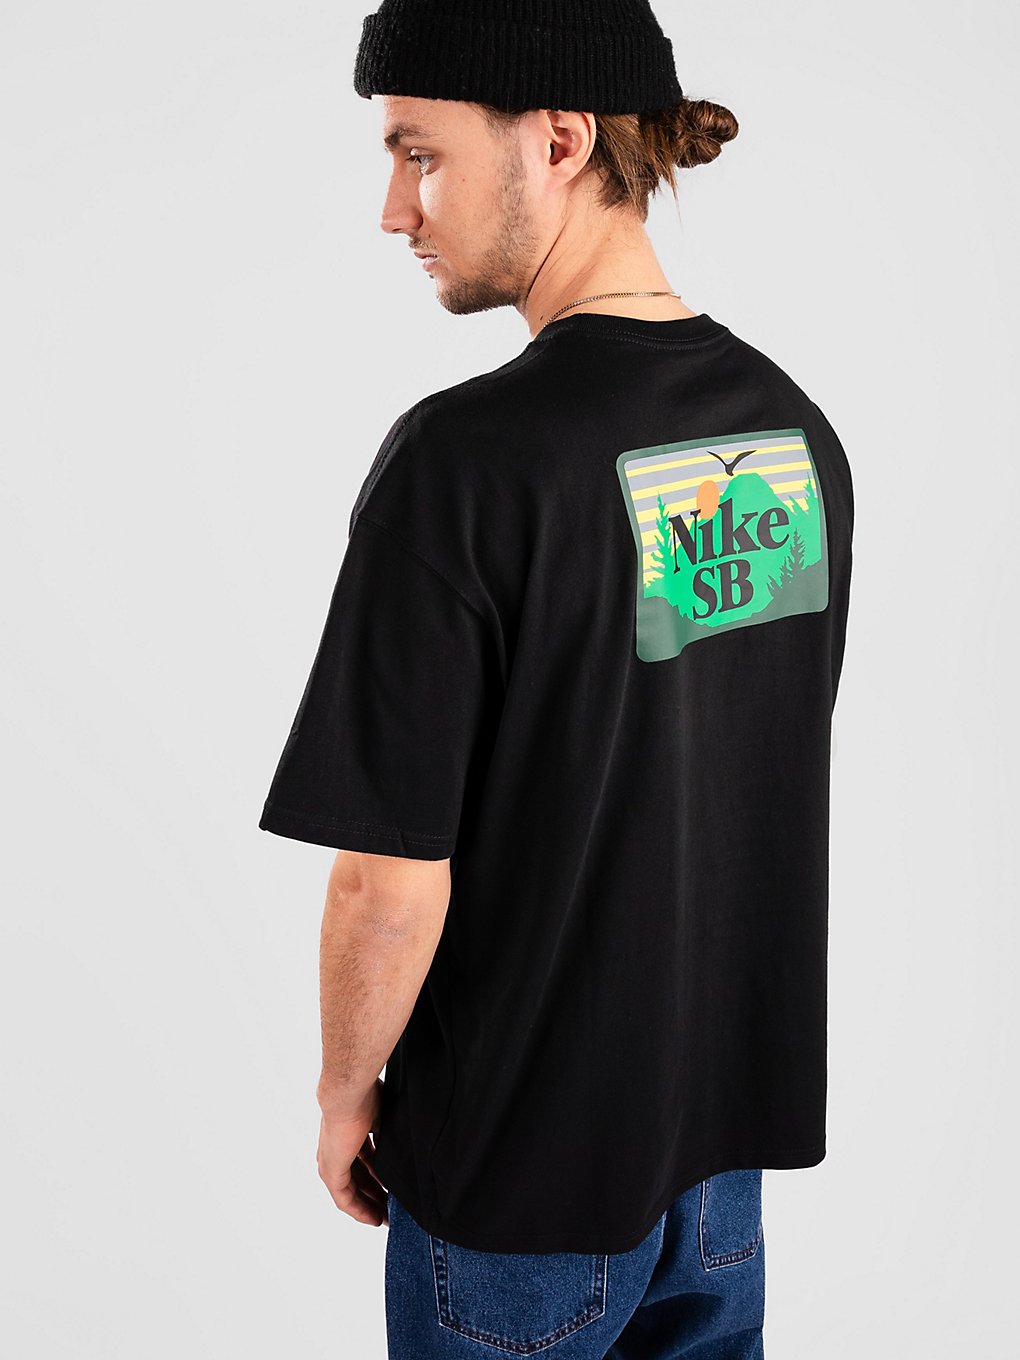 Nike SB Approach T-Shirt black